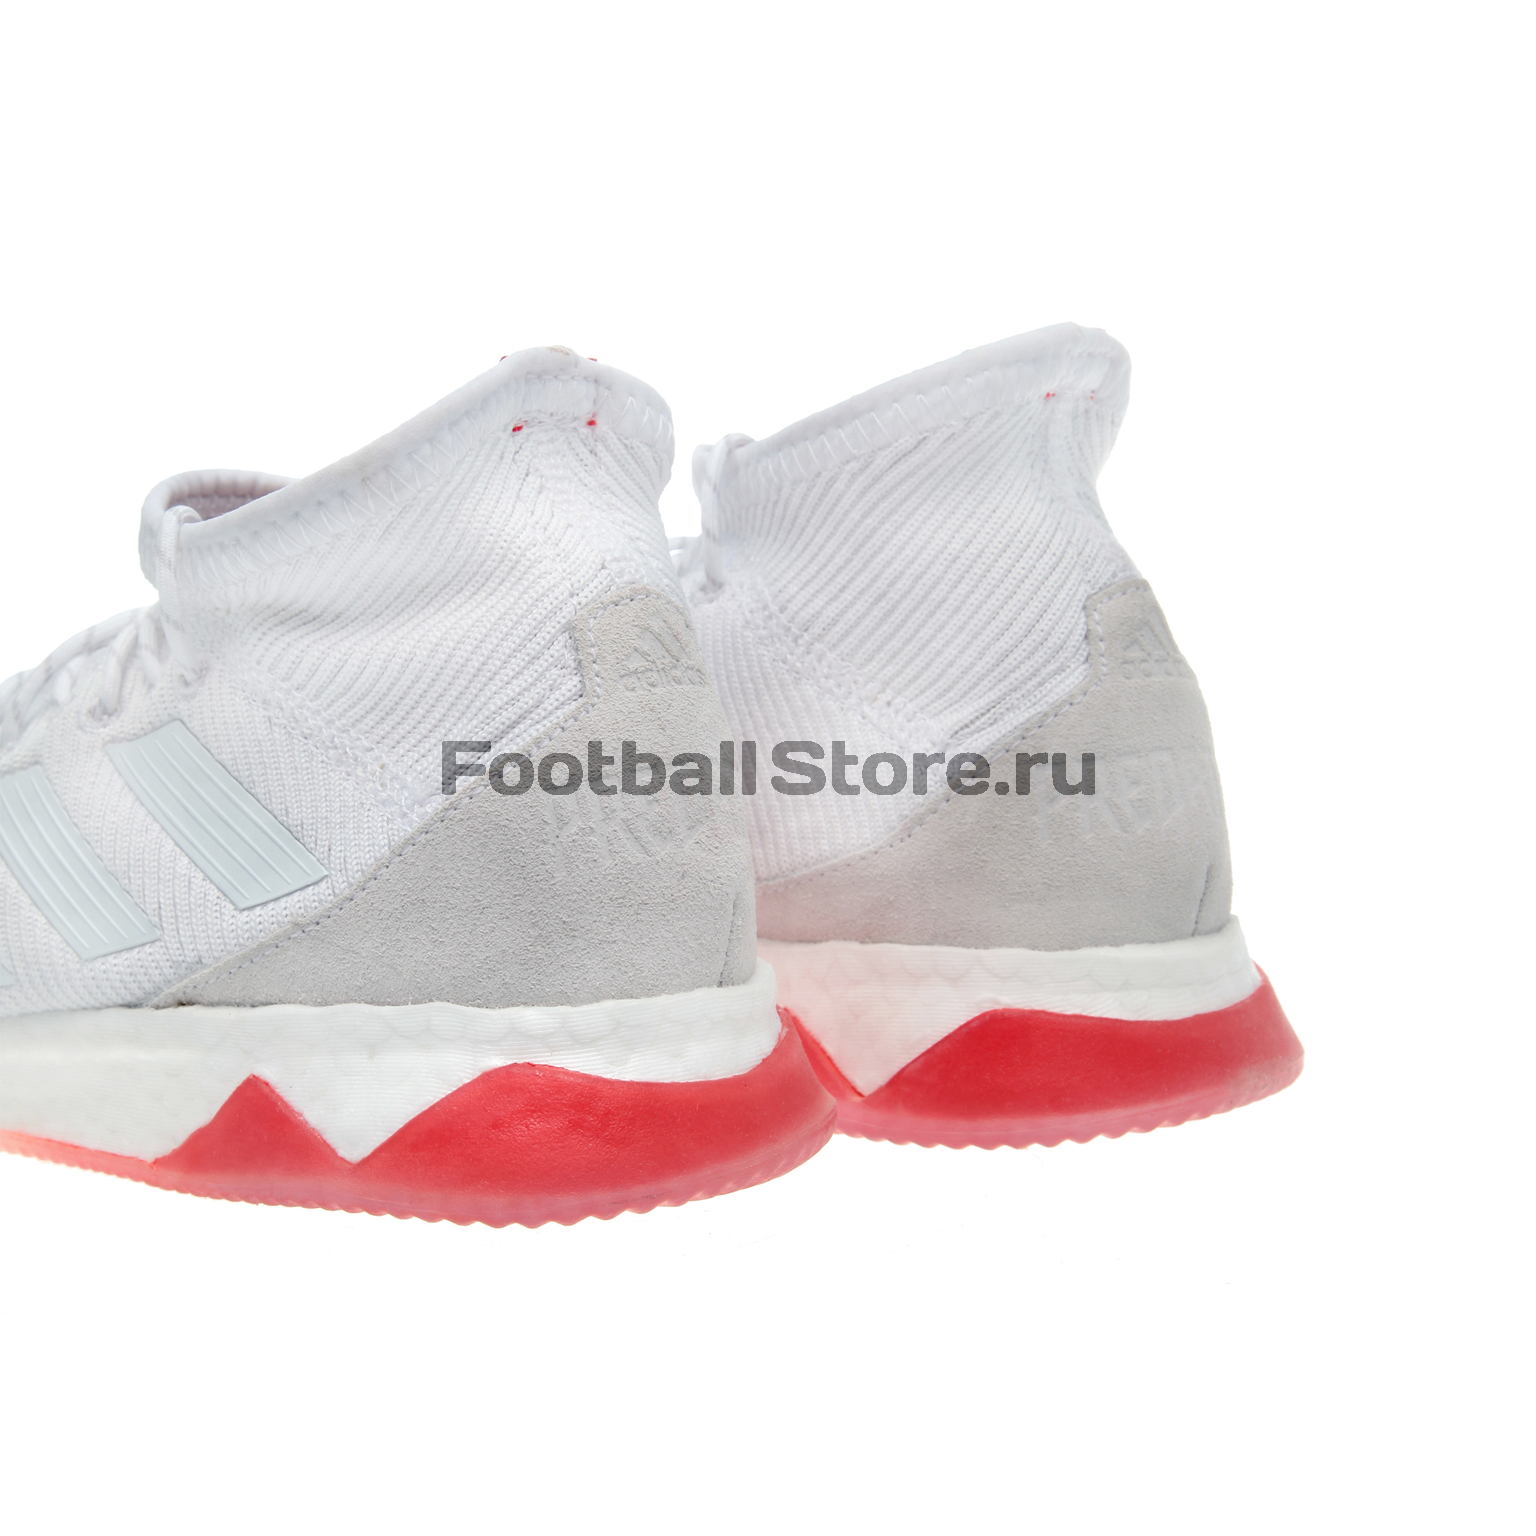 Футбольная обувь Adidas Predator Tango 18.1 TR CM7700